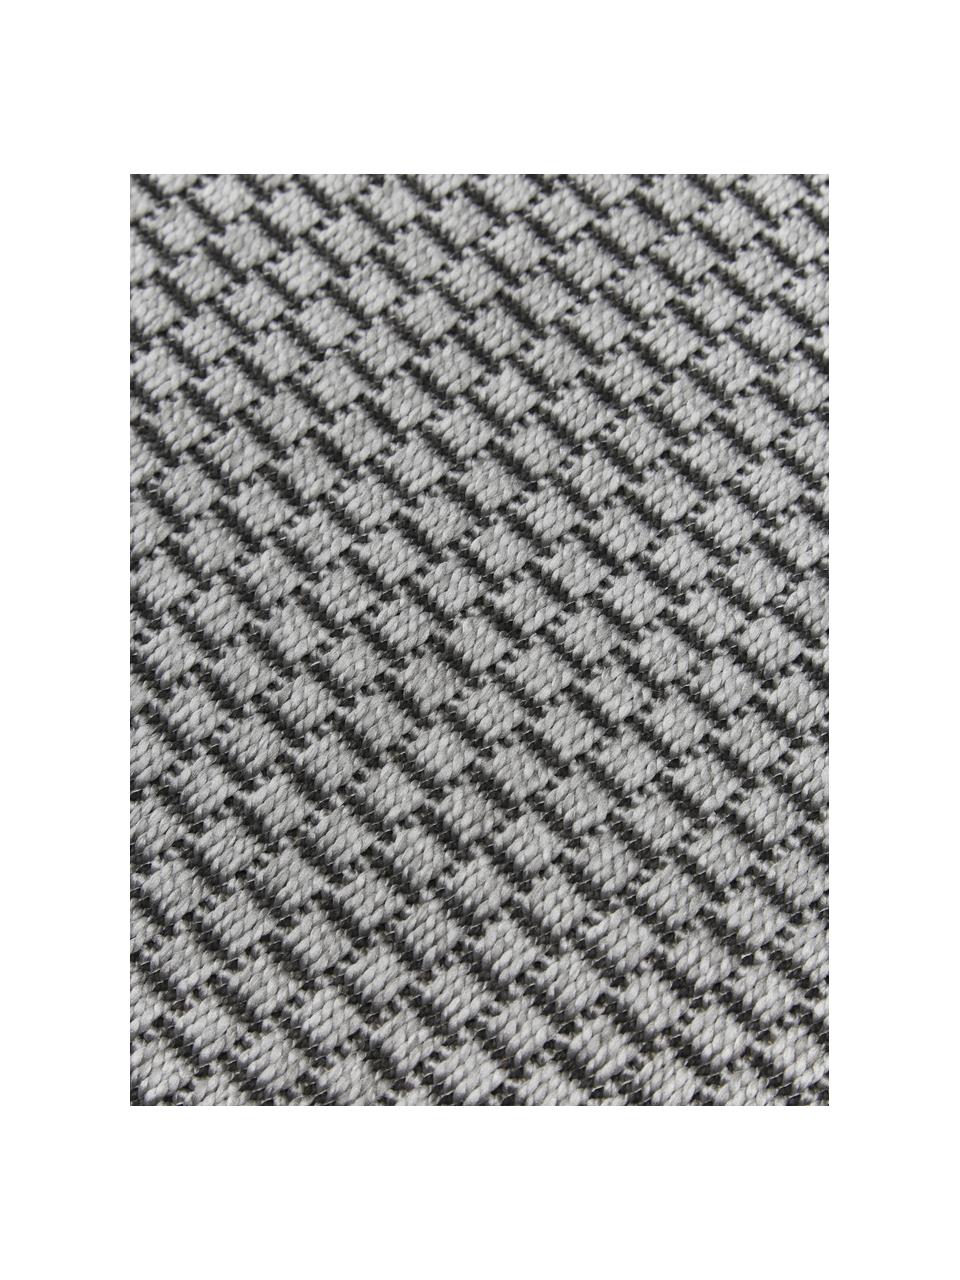 Ovaler In- & Outdoor-Teppich Toronto in Grau, 100% Polypropylen, Grau, B 160 x L 230 cm (Größe M)